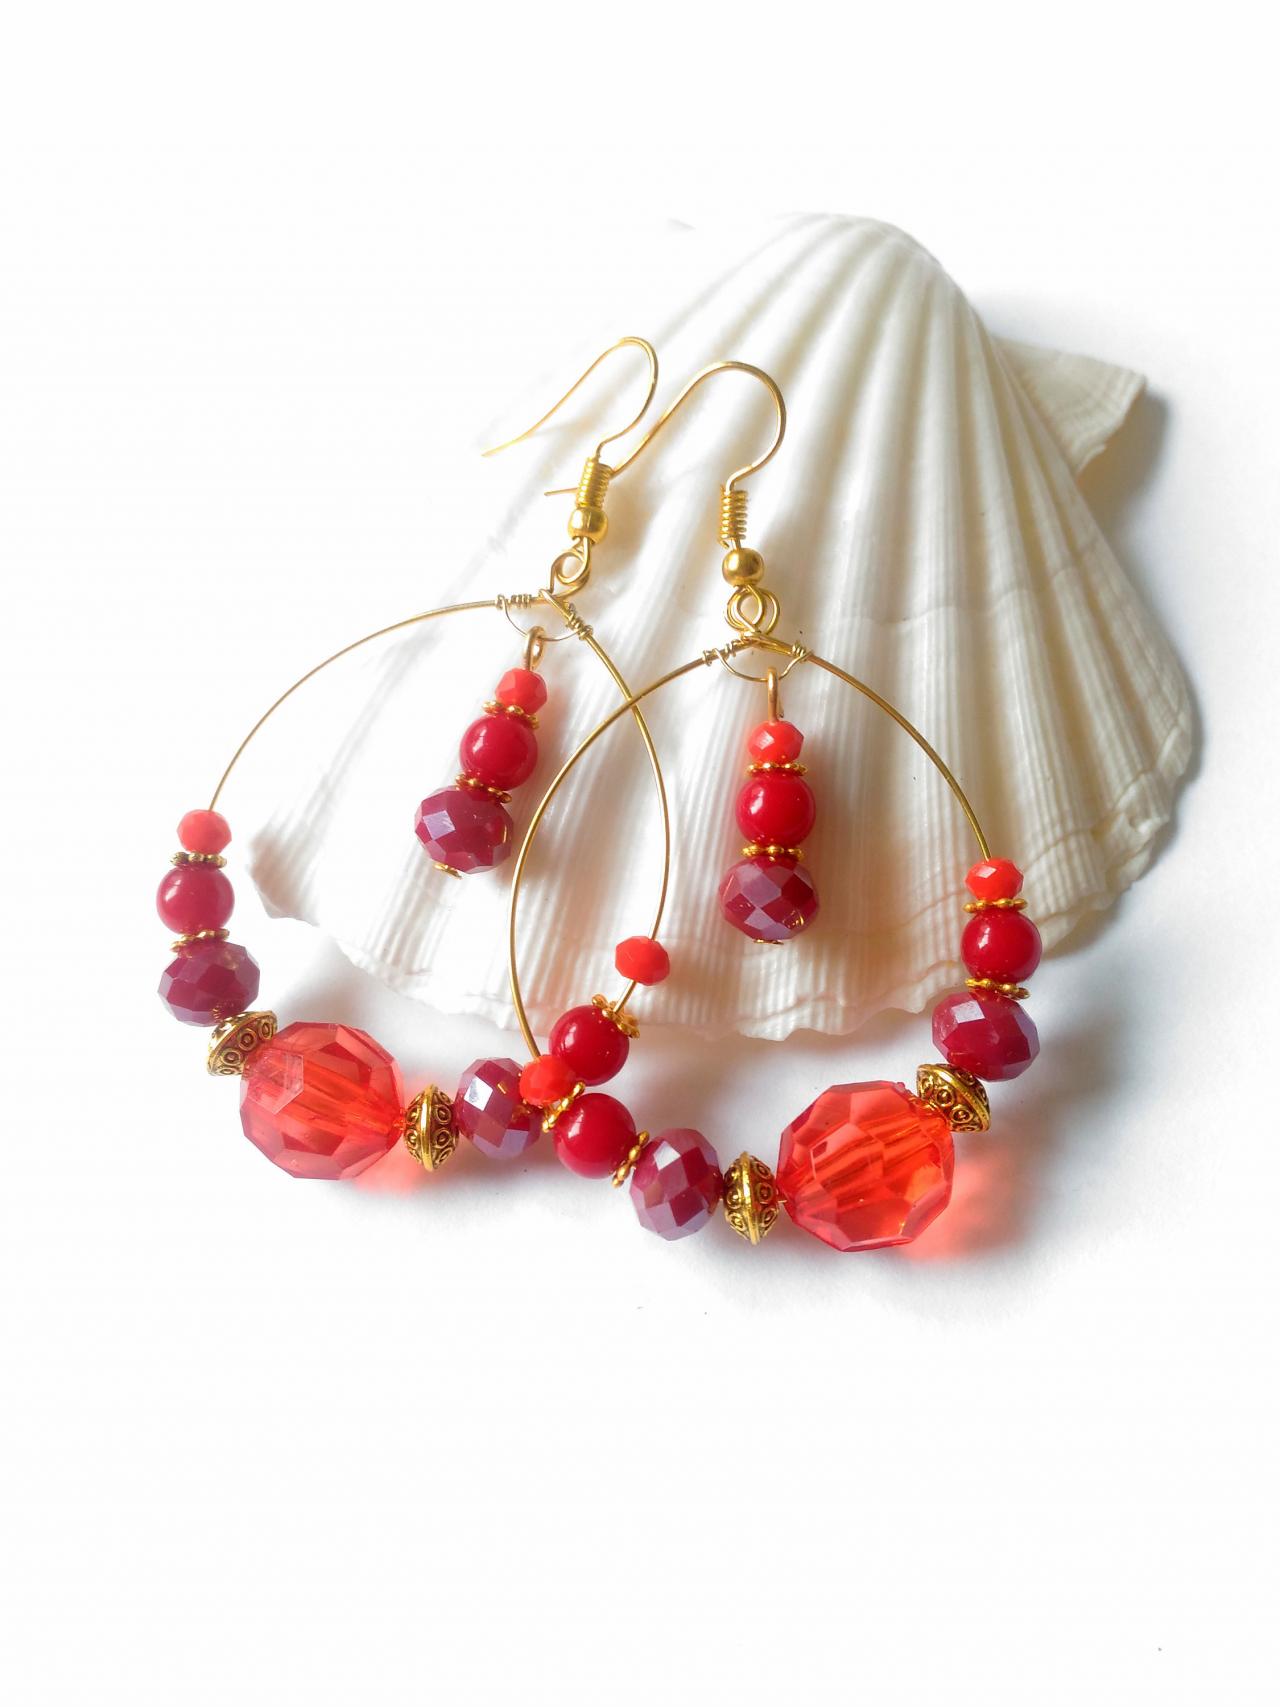 Red Boho Hoops, Bohemian Hoop Earrings, Red Chandelier Earrings, Red And Gold Gypsy Earrings, Gift For Her, Large Beaded Hoops